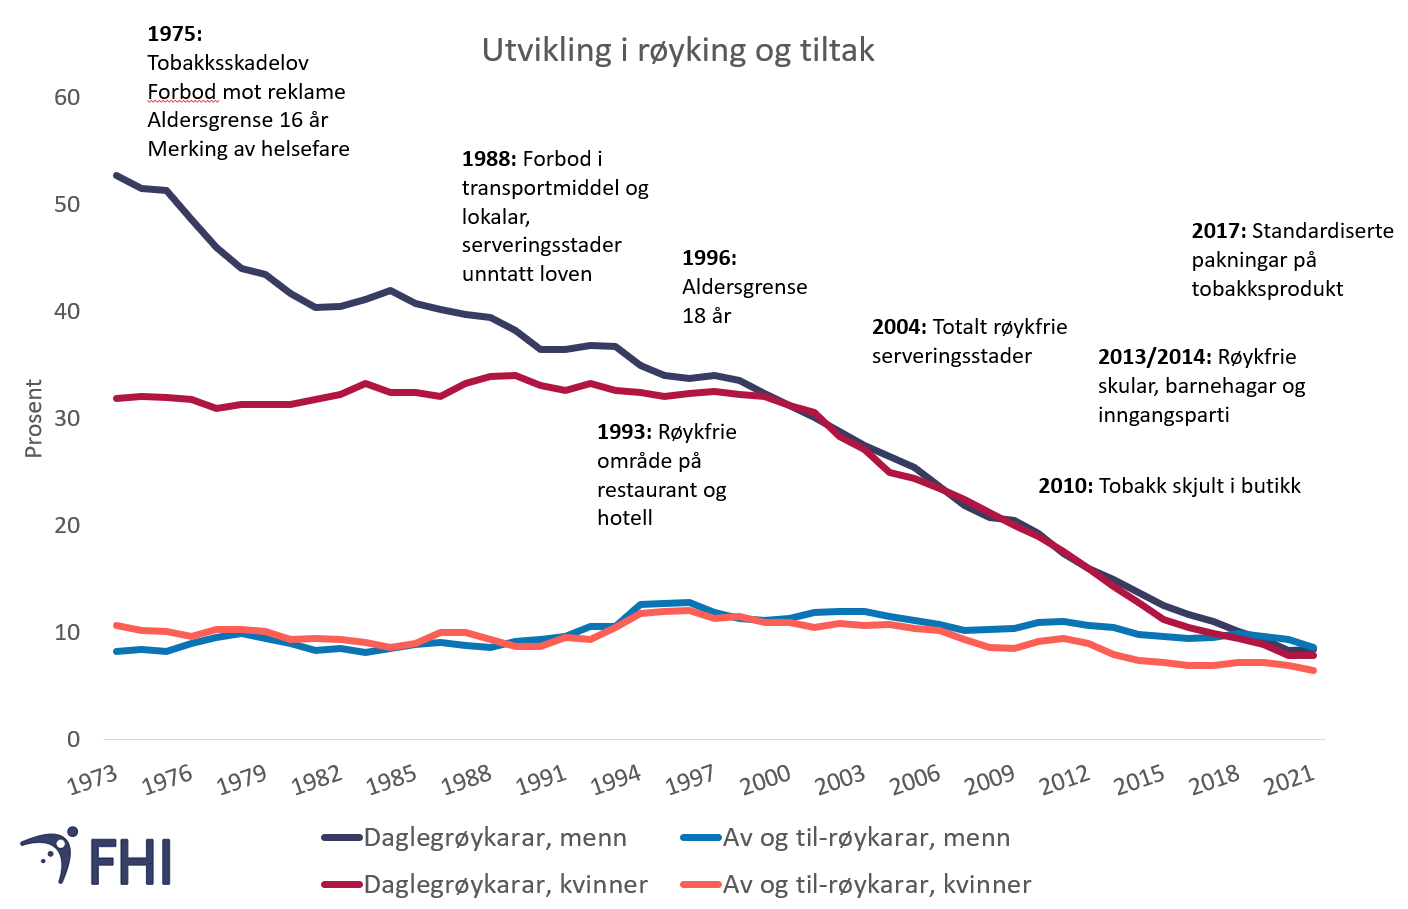 Figur 4. Utvikling i røyking blant vaksne kvinner og menn (16-74 år) og tidspunkt for systematiske tiltak mot tobakk i perioden 1973-2021. Kjelde: Folkehelseinstituttet/Statistisk sentralbyrå. 